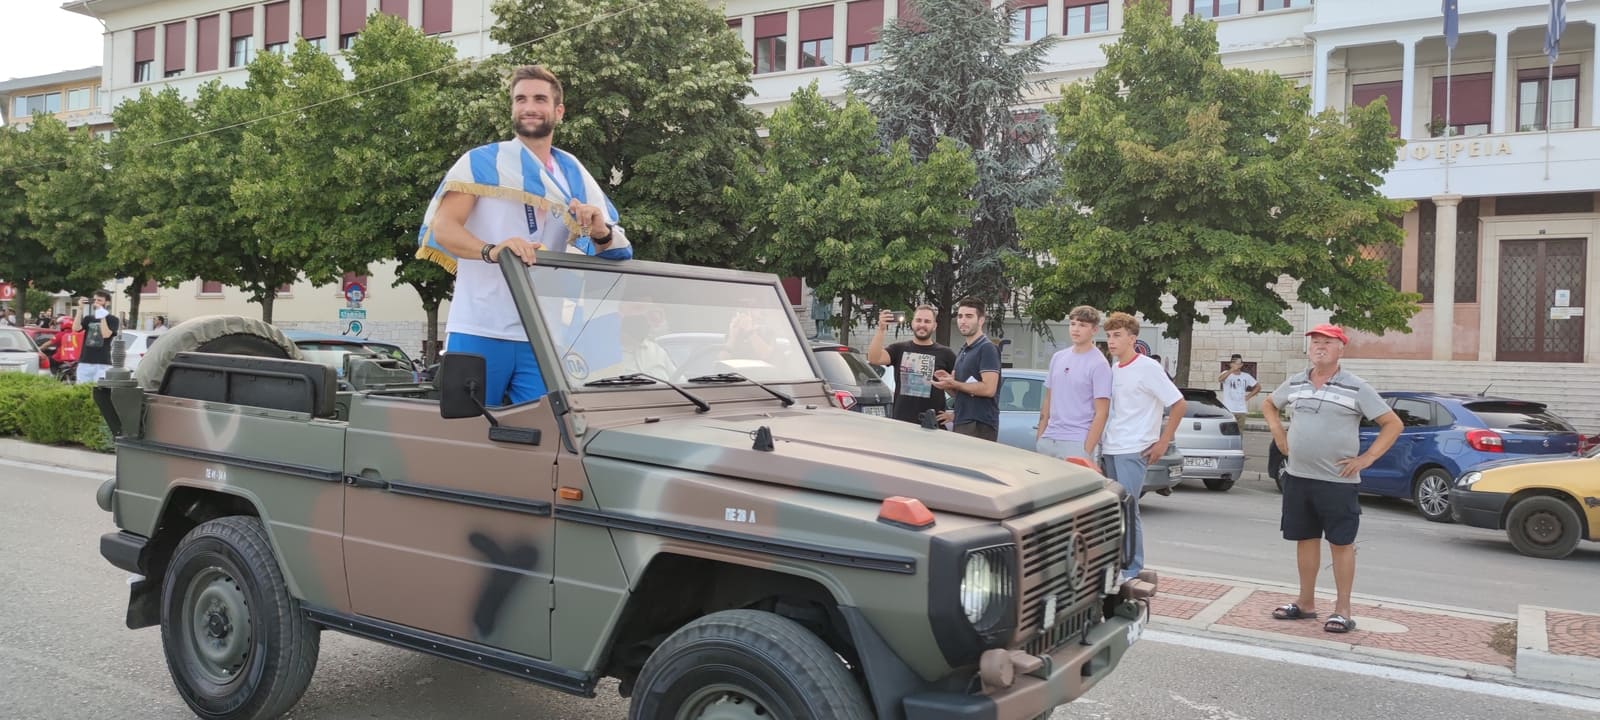 Στέφανος Ντούσκος -Ιωάννινα: Με στρατιωτικό όχημα ο Έλληνας Ολυμπιονίκης (pics)